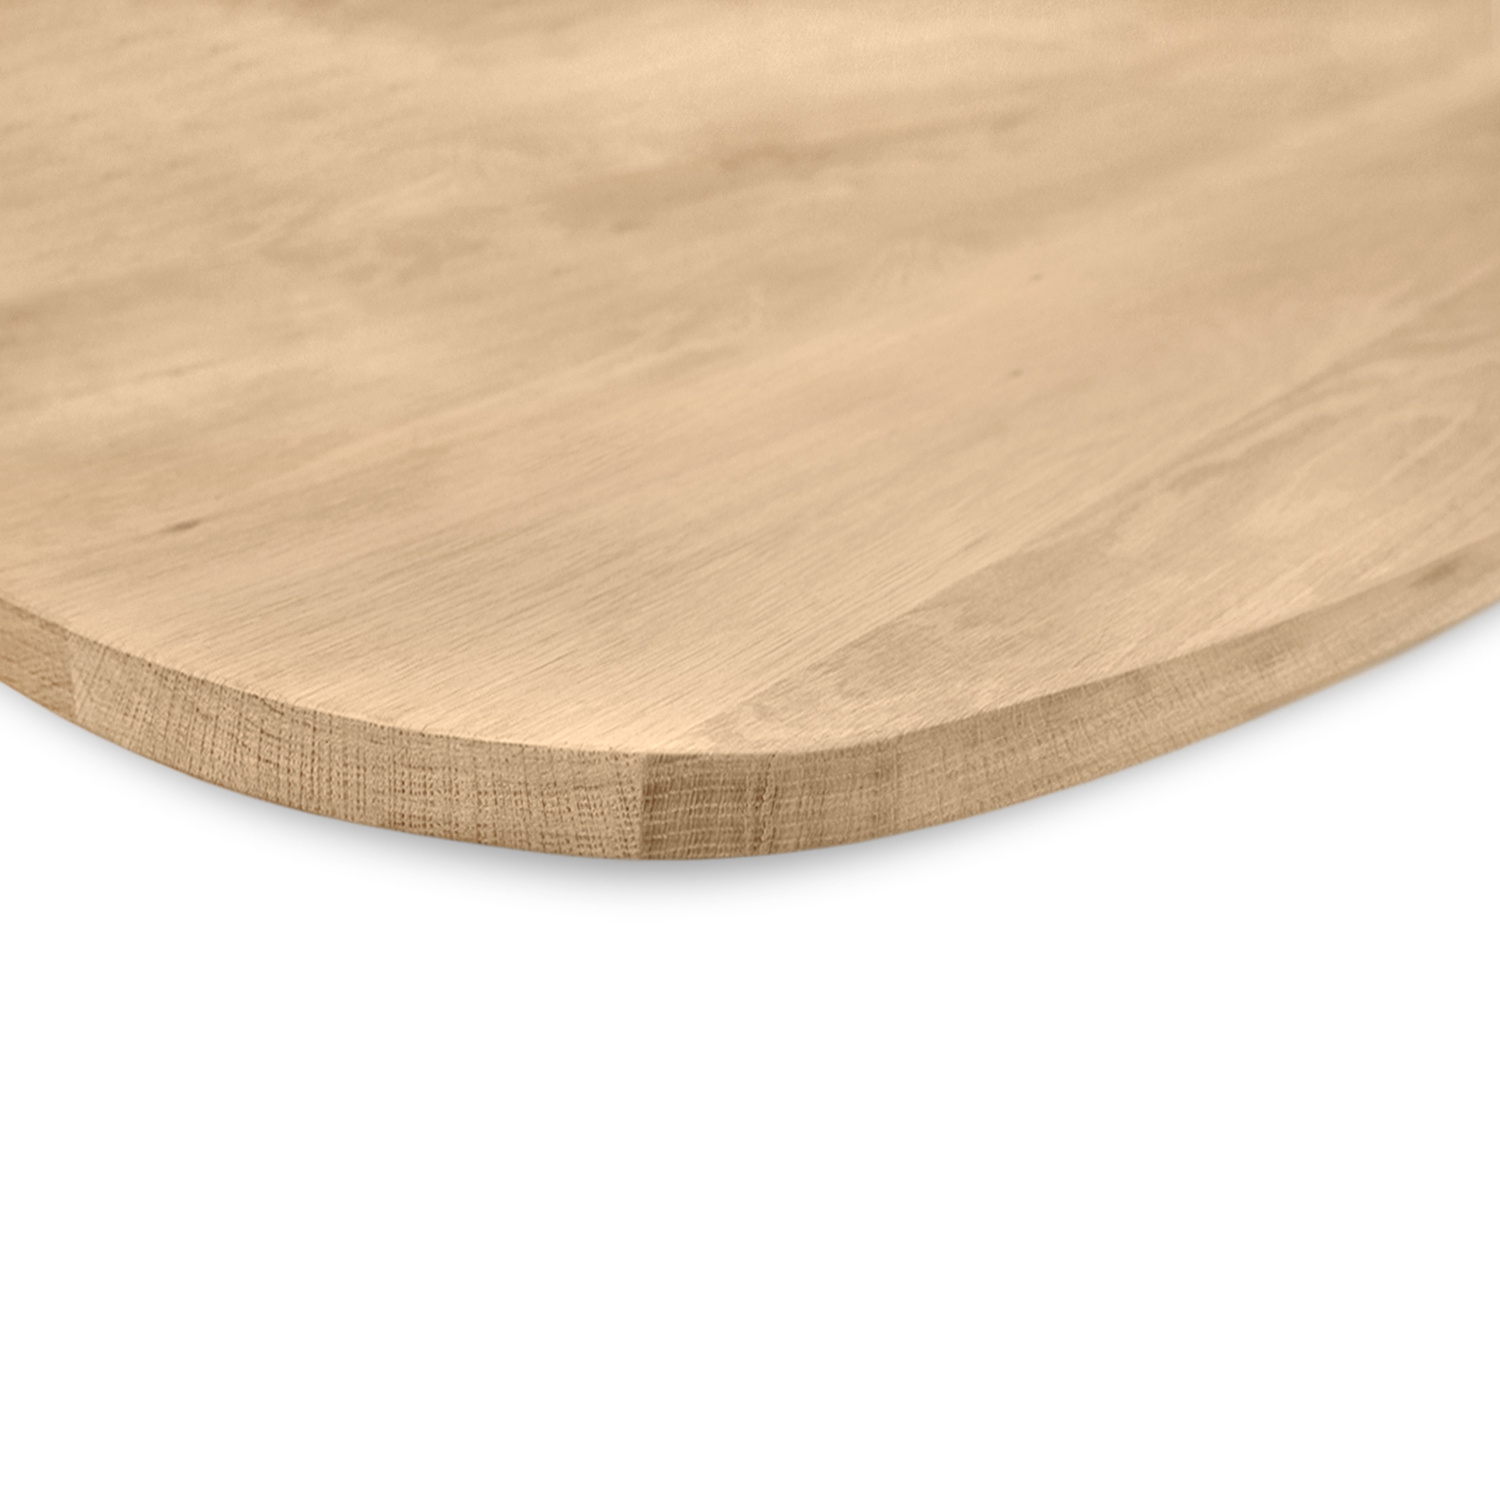  Tischplatte Wildeiche dänisch-oval nach Maß - 4 cm dick (1-Schicht) - XXL Lamellen (14-20 cm breit) - Asteiche (rustikal) - Bootsform - verleimt & künstlich getrocknet (HF 8-12%) - 40-117x80-247 cm